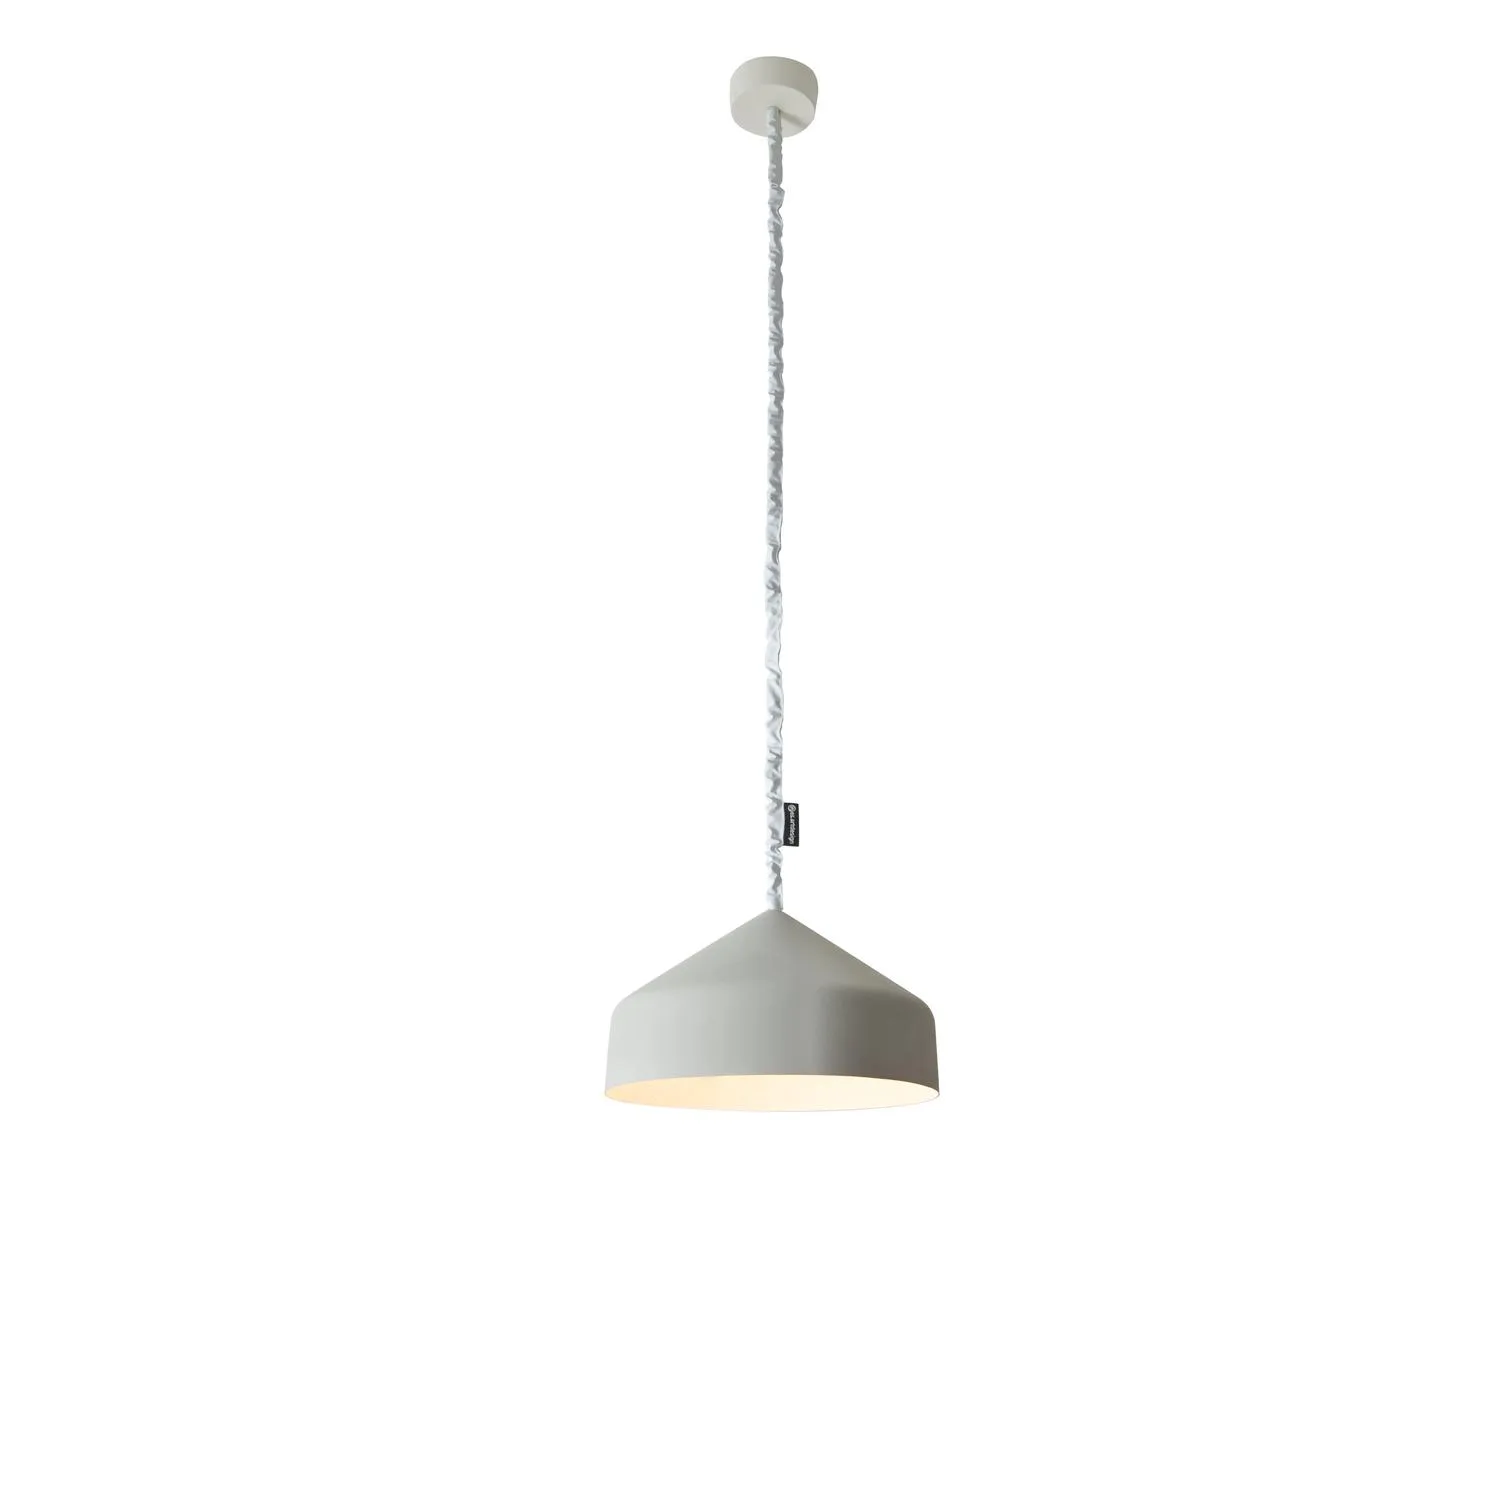 Lampada da Soffitto Cyrcus cemento colore grigio Altezza 22,5 cm Diametro 40 cm, realizzata in laprene, nylon, nebulite, vernice effeto cemento